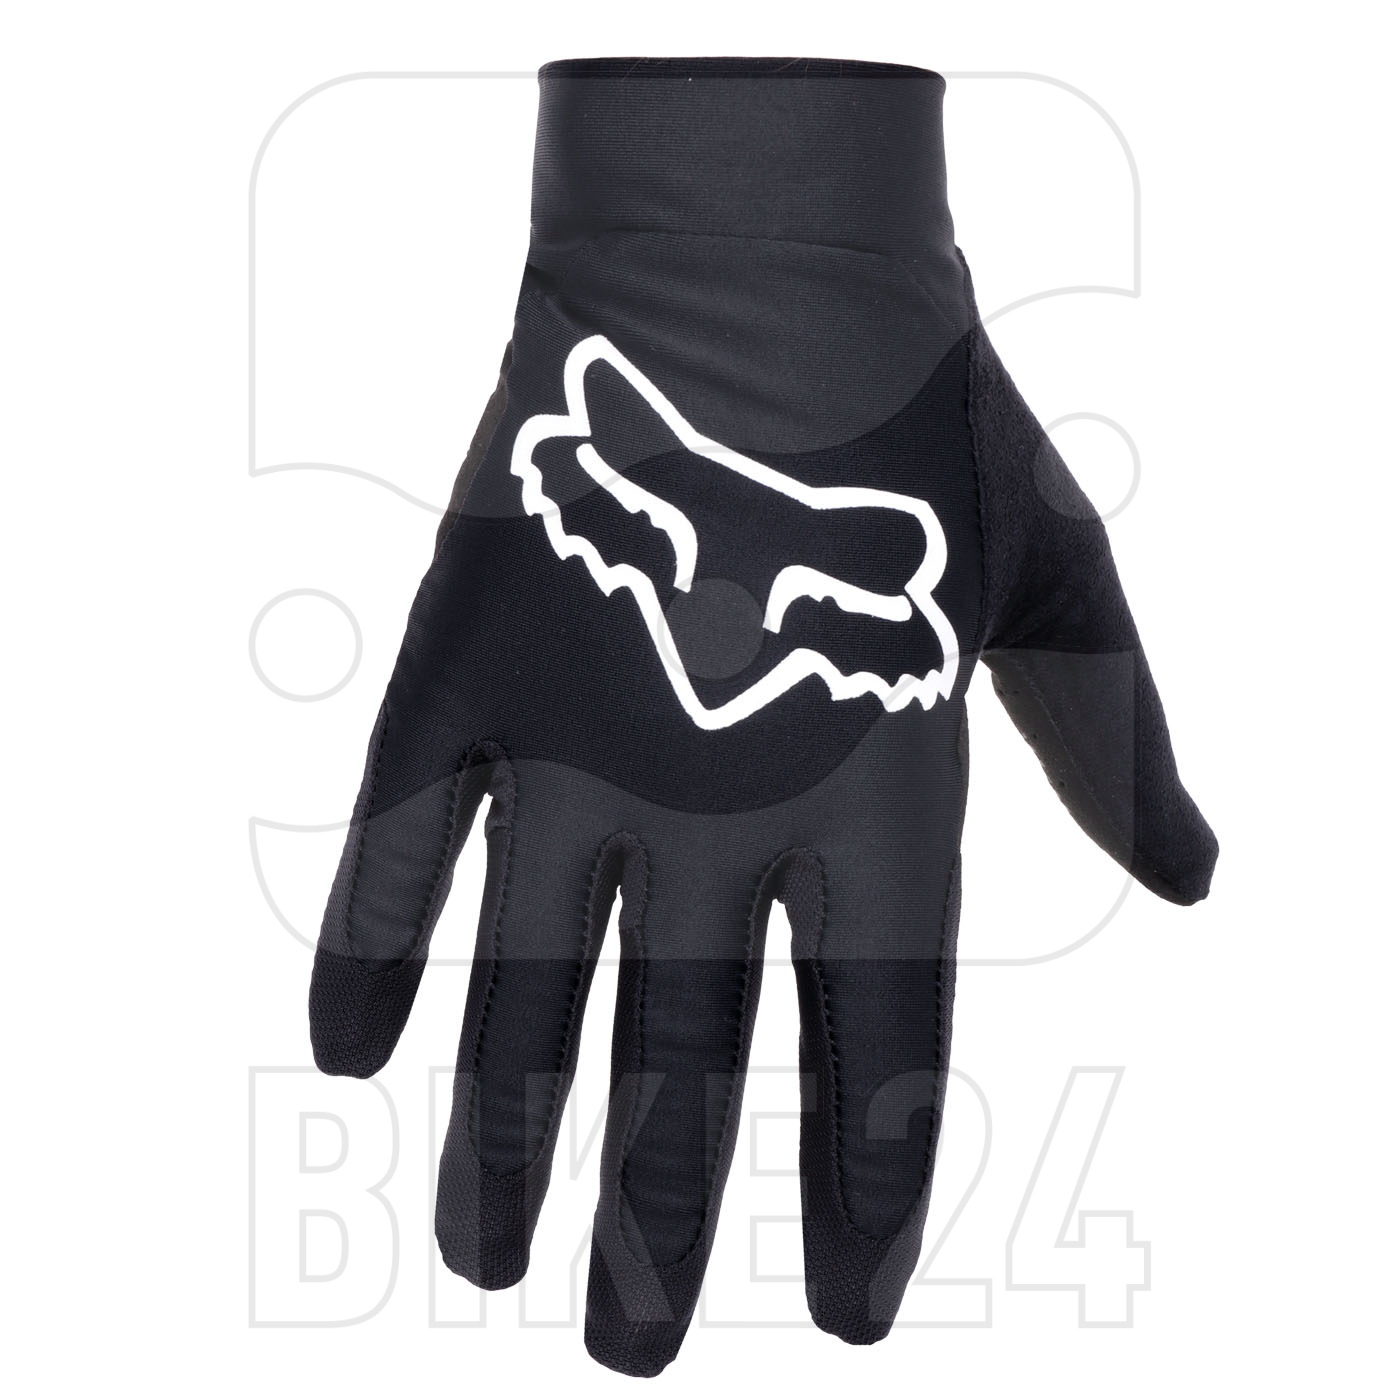 Produktbild von FOX Flexair MTB Vollfinger-Handschuhe - schwarz